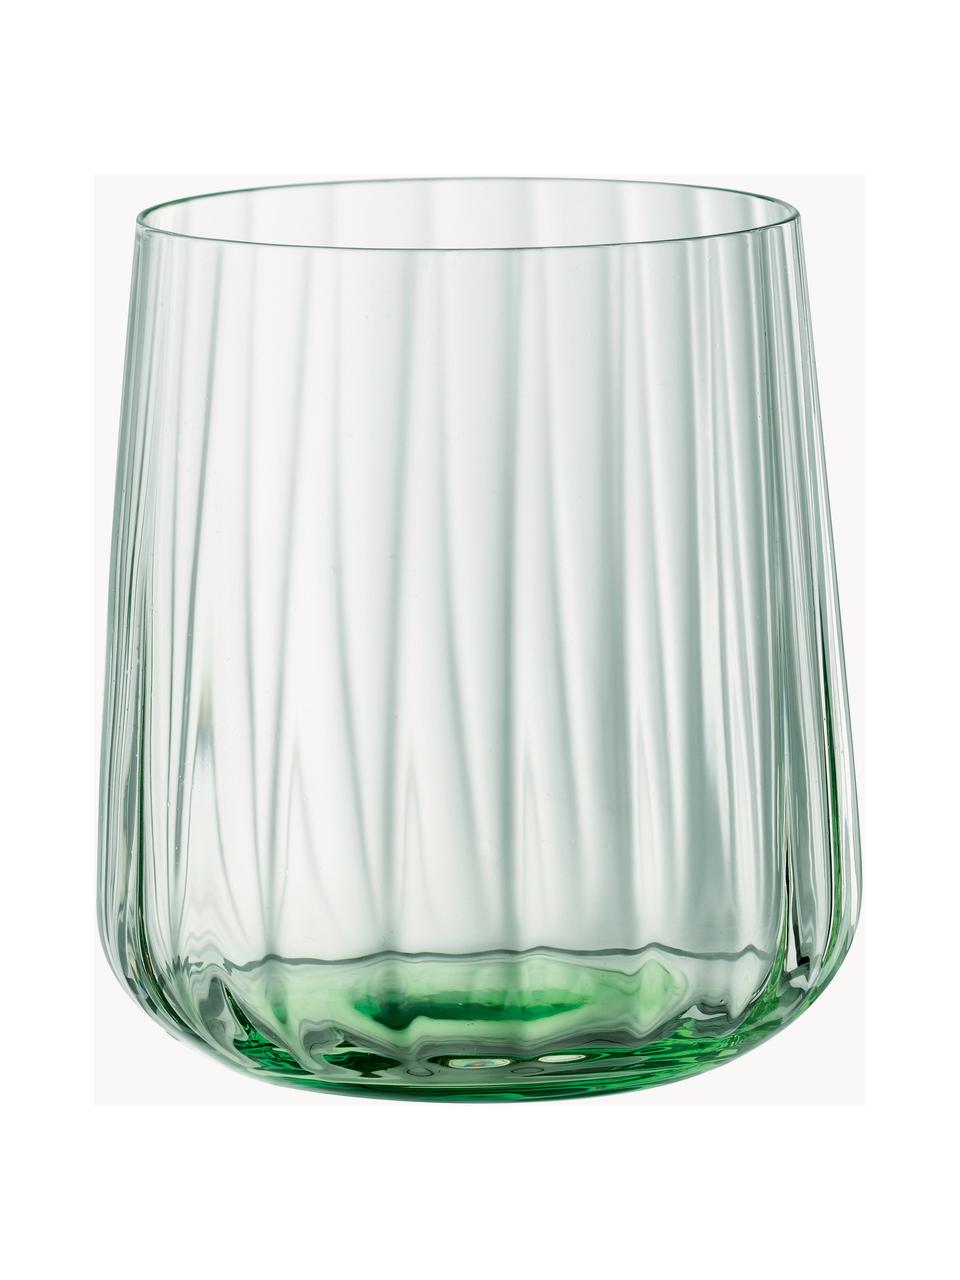 Kristall-Gläser Lifestyle, 2 Stück, Kristallglas, Grün, Ø 8 x H 9 cm, 340 ml